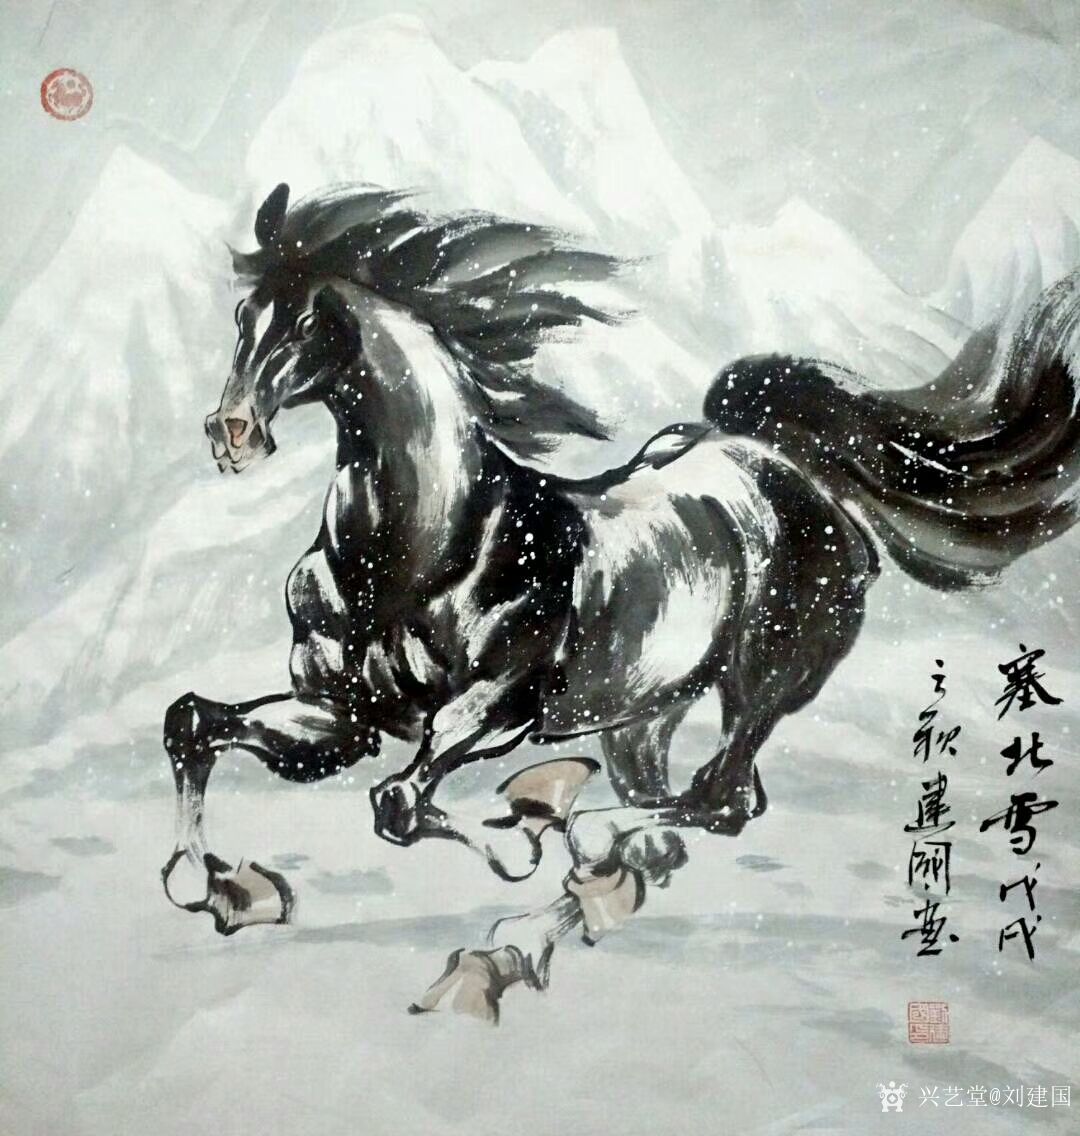 艺术家刘建国日记:练马近作:《塞北雪》,《千里之行始于足下》,《思乡